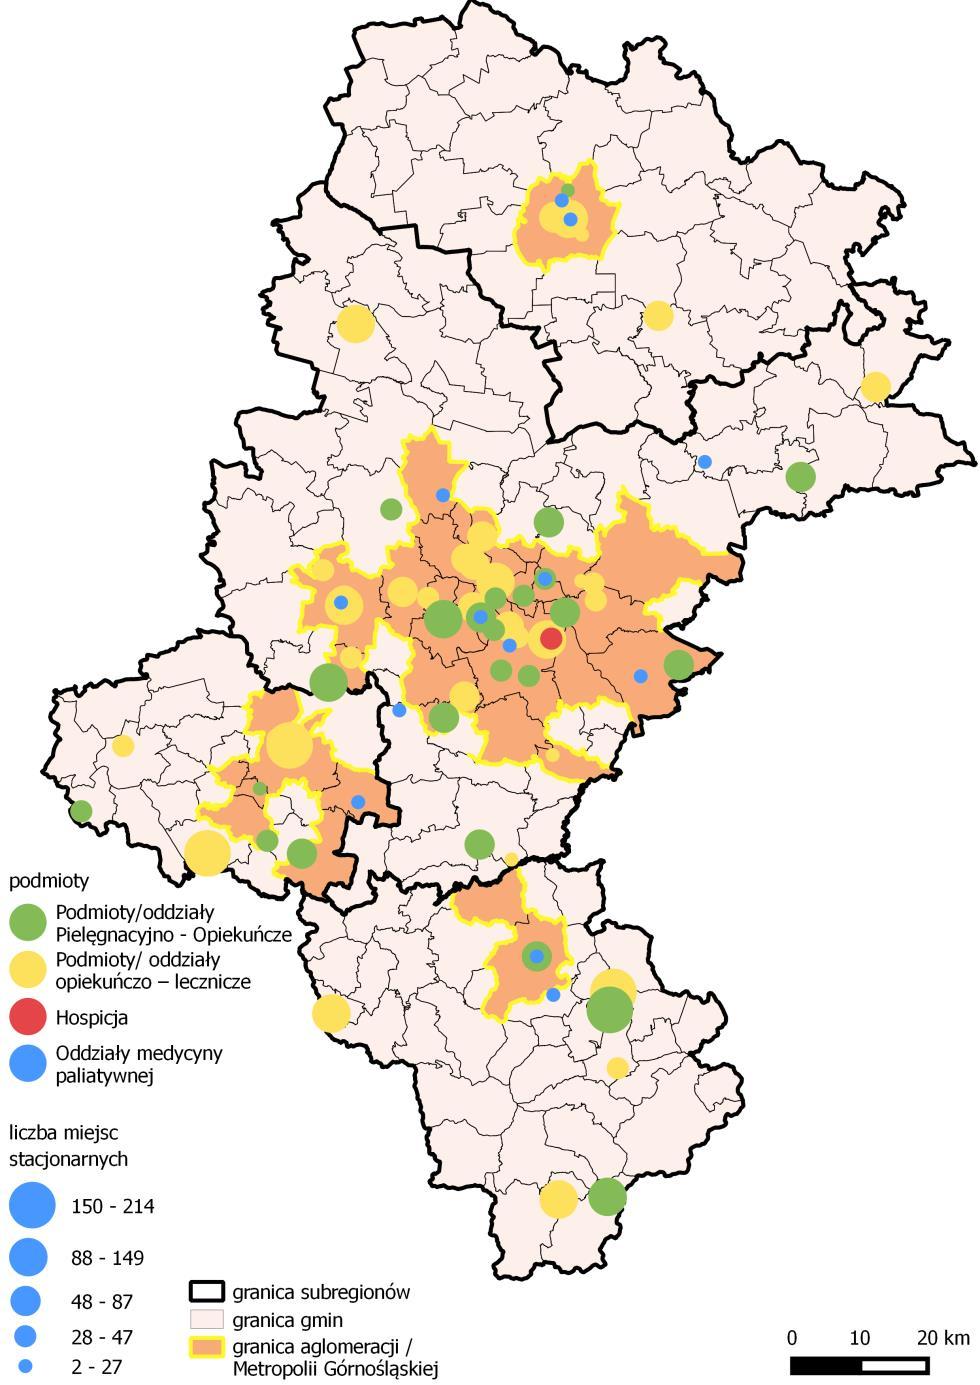 Mapa 11. Podmioty pielęgnacyjno-opiekuńcze, opiekuńczo-lecznicze, hospicja oraz oddziały opieki paliatywnej w województwie śląskim w 2015 roku.